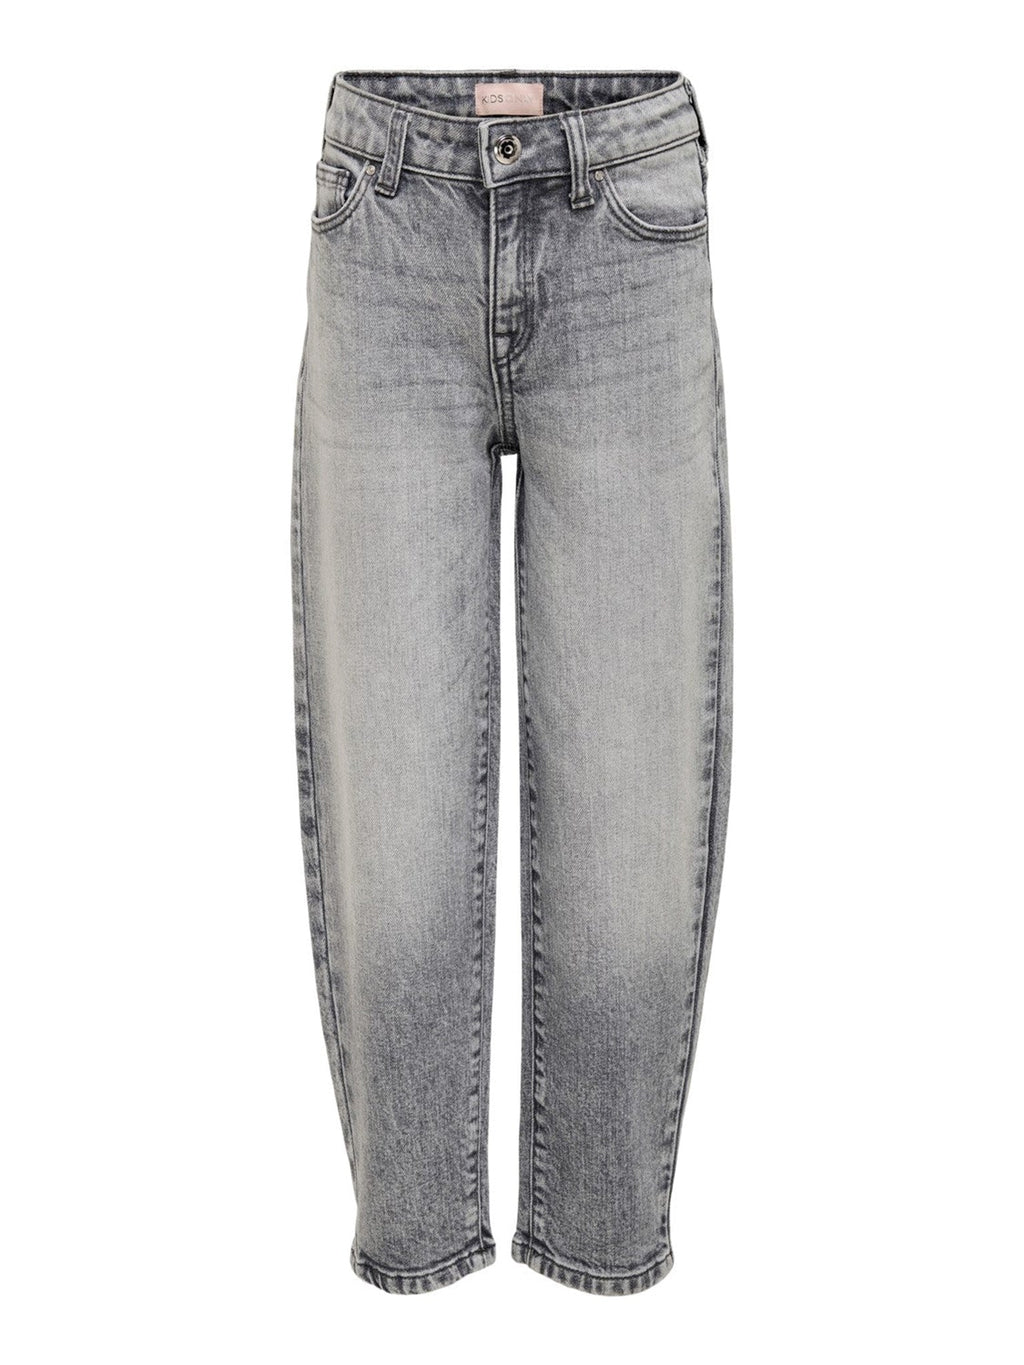 Lucca Life Jeans - mezclilla gris claro